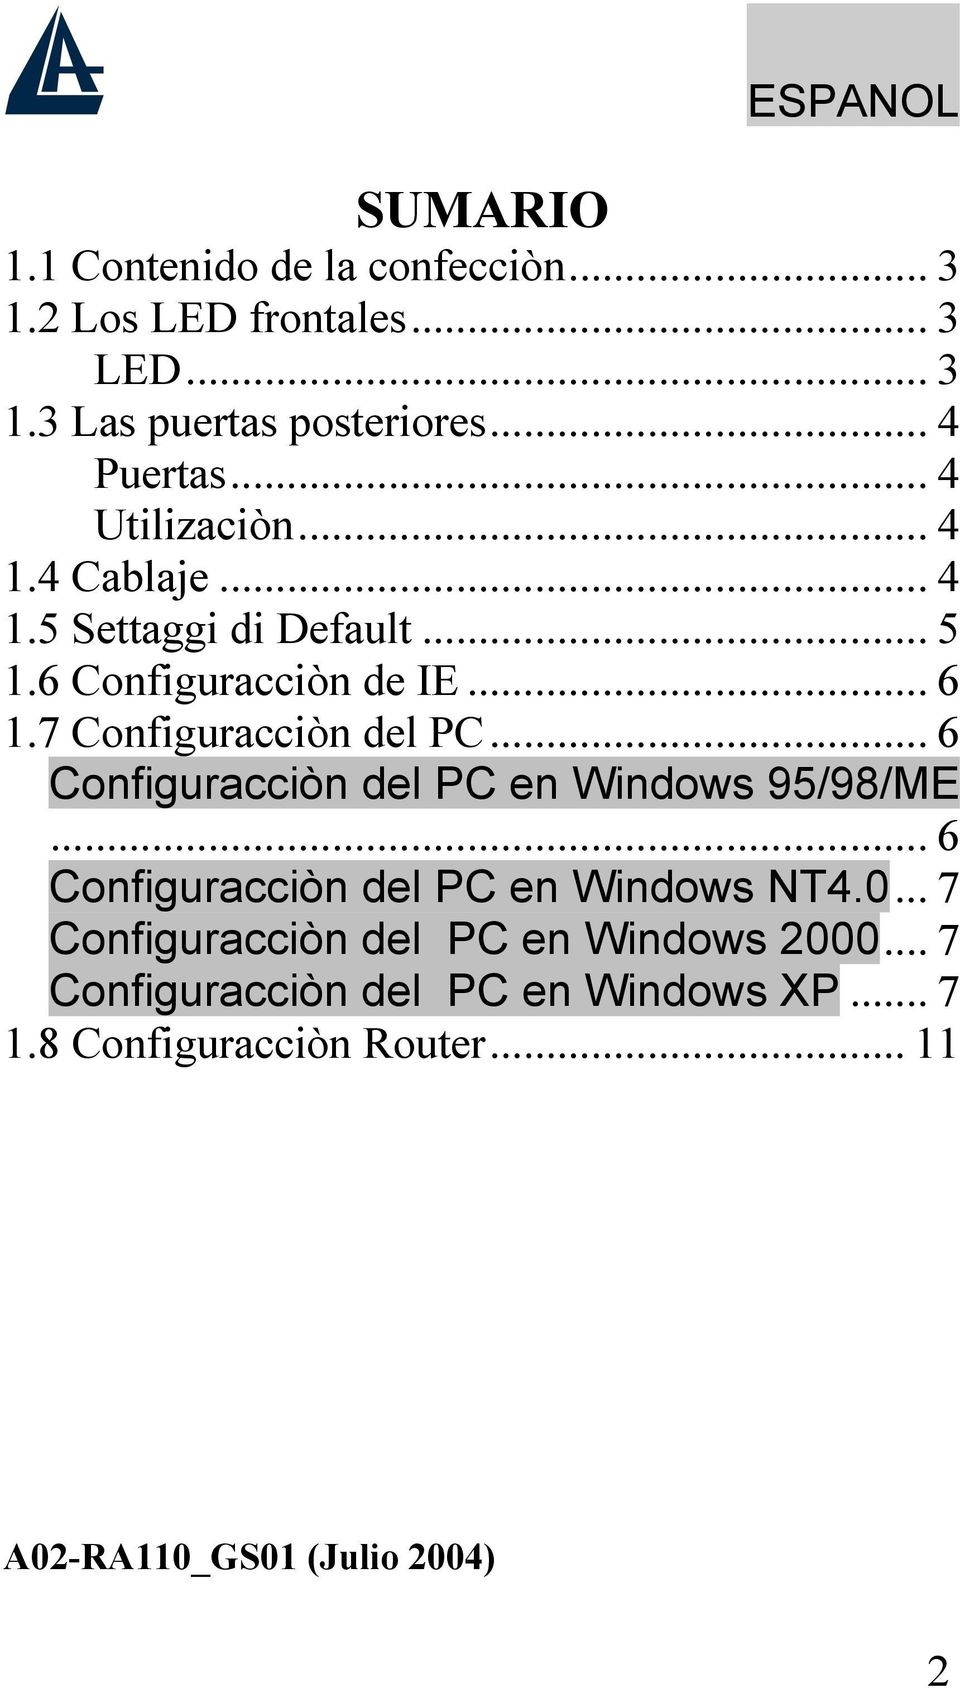 7 Configuracciòn del PC... 6 Configuracciòn del PC en Windows 95/98/ME... 6 Configuracciòn del PC en Windows NT4.0.